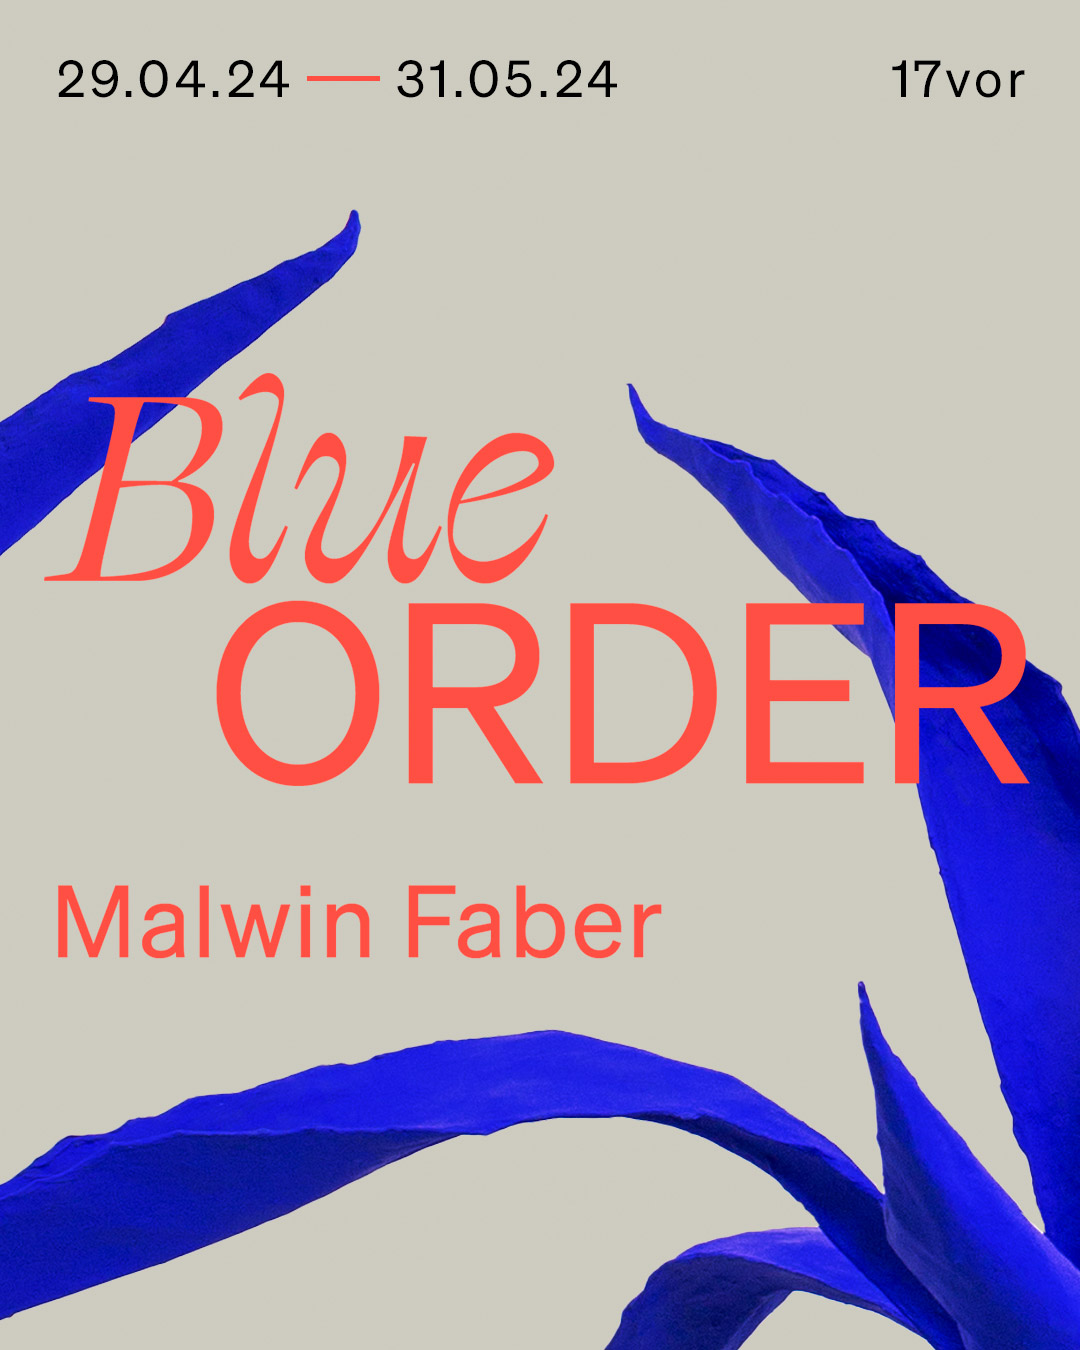 Blue Order. Malwin Faber, 17vor